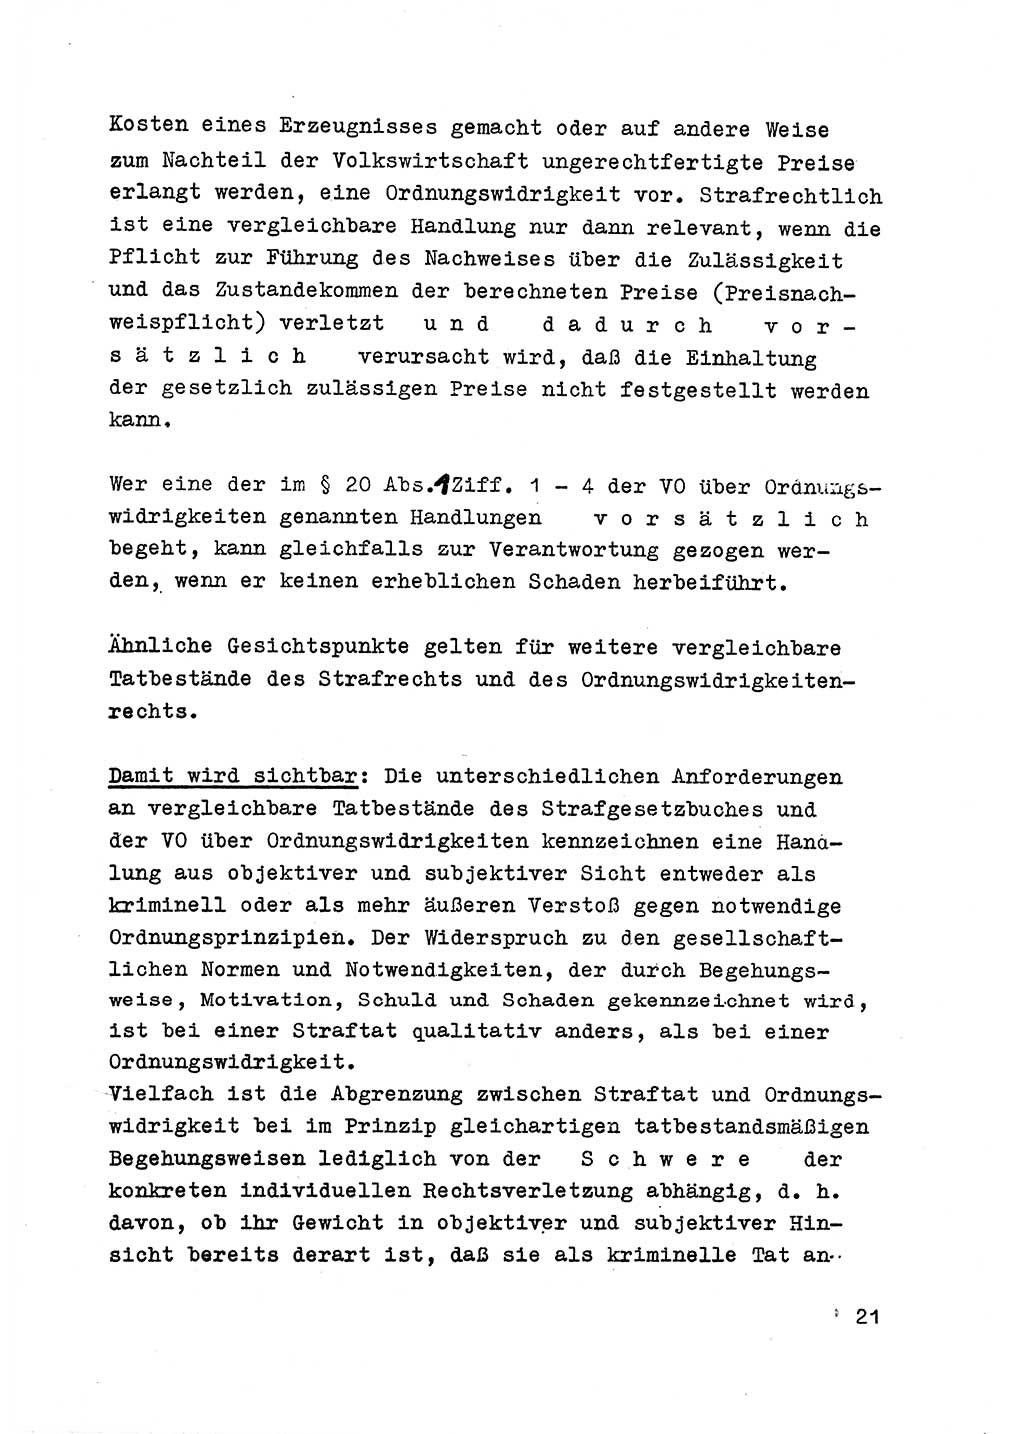 Strafrecht der DDR (Deutsche Demokratische Republik), Besonderer Teil, Lehrmaterial, Heft 6 1970, Seite 21 (Strafr. DDR BT Lehrmat. H. 6 1970, S. 21)